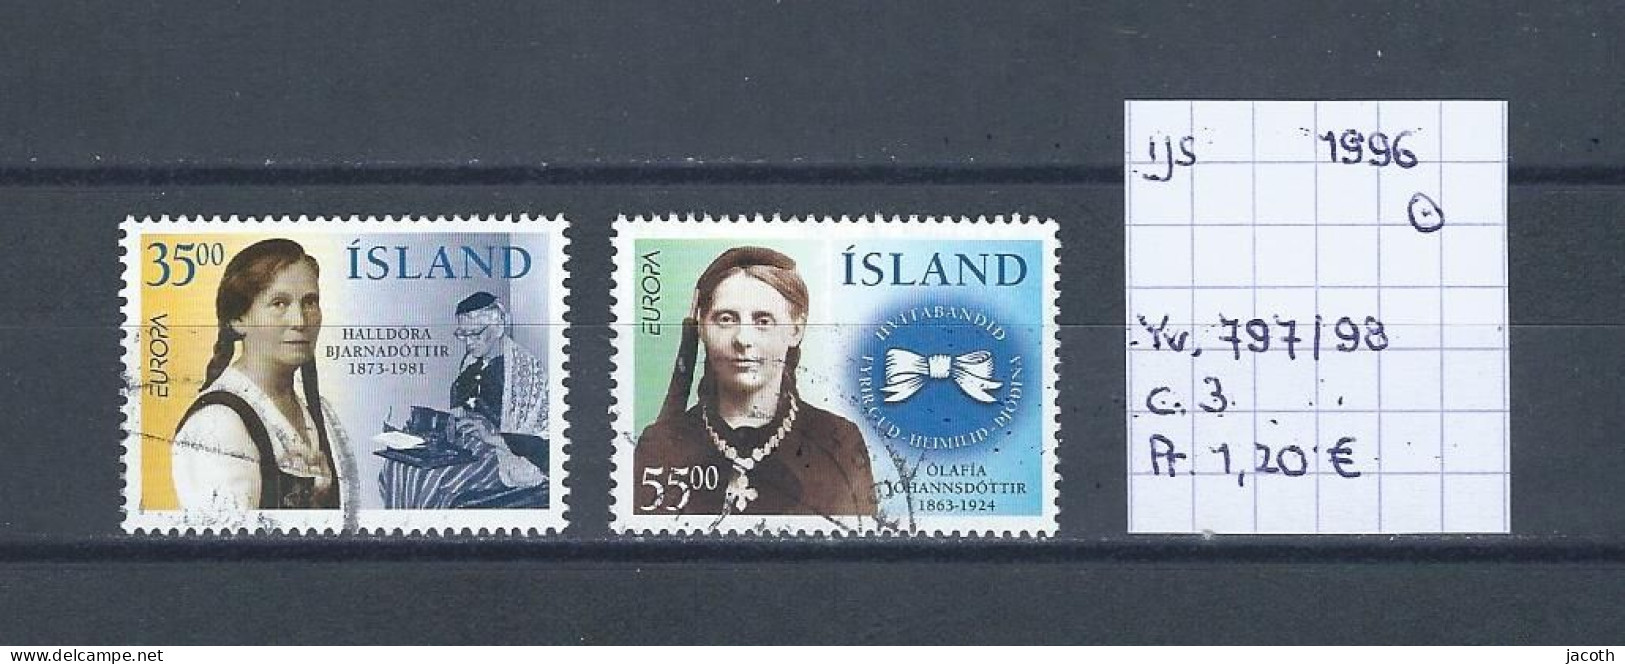 (TJ) IJsland 1996 - YT 797/98 (gest./obl./used) - Used Stamps